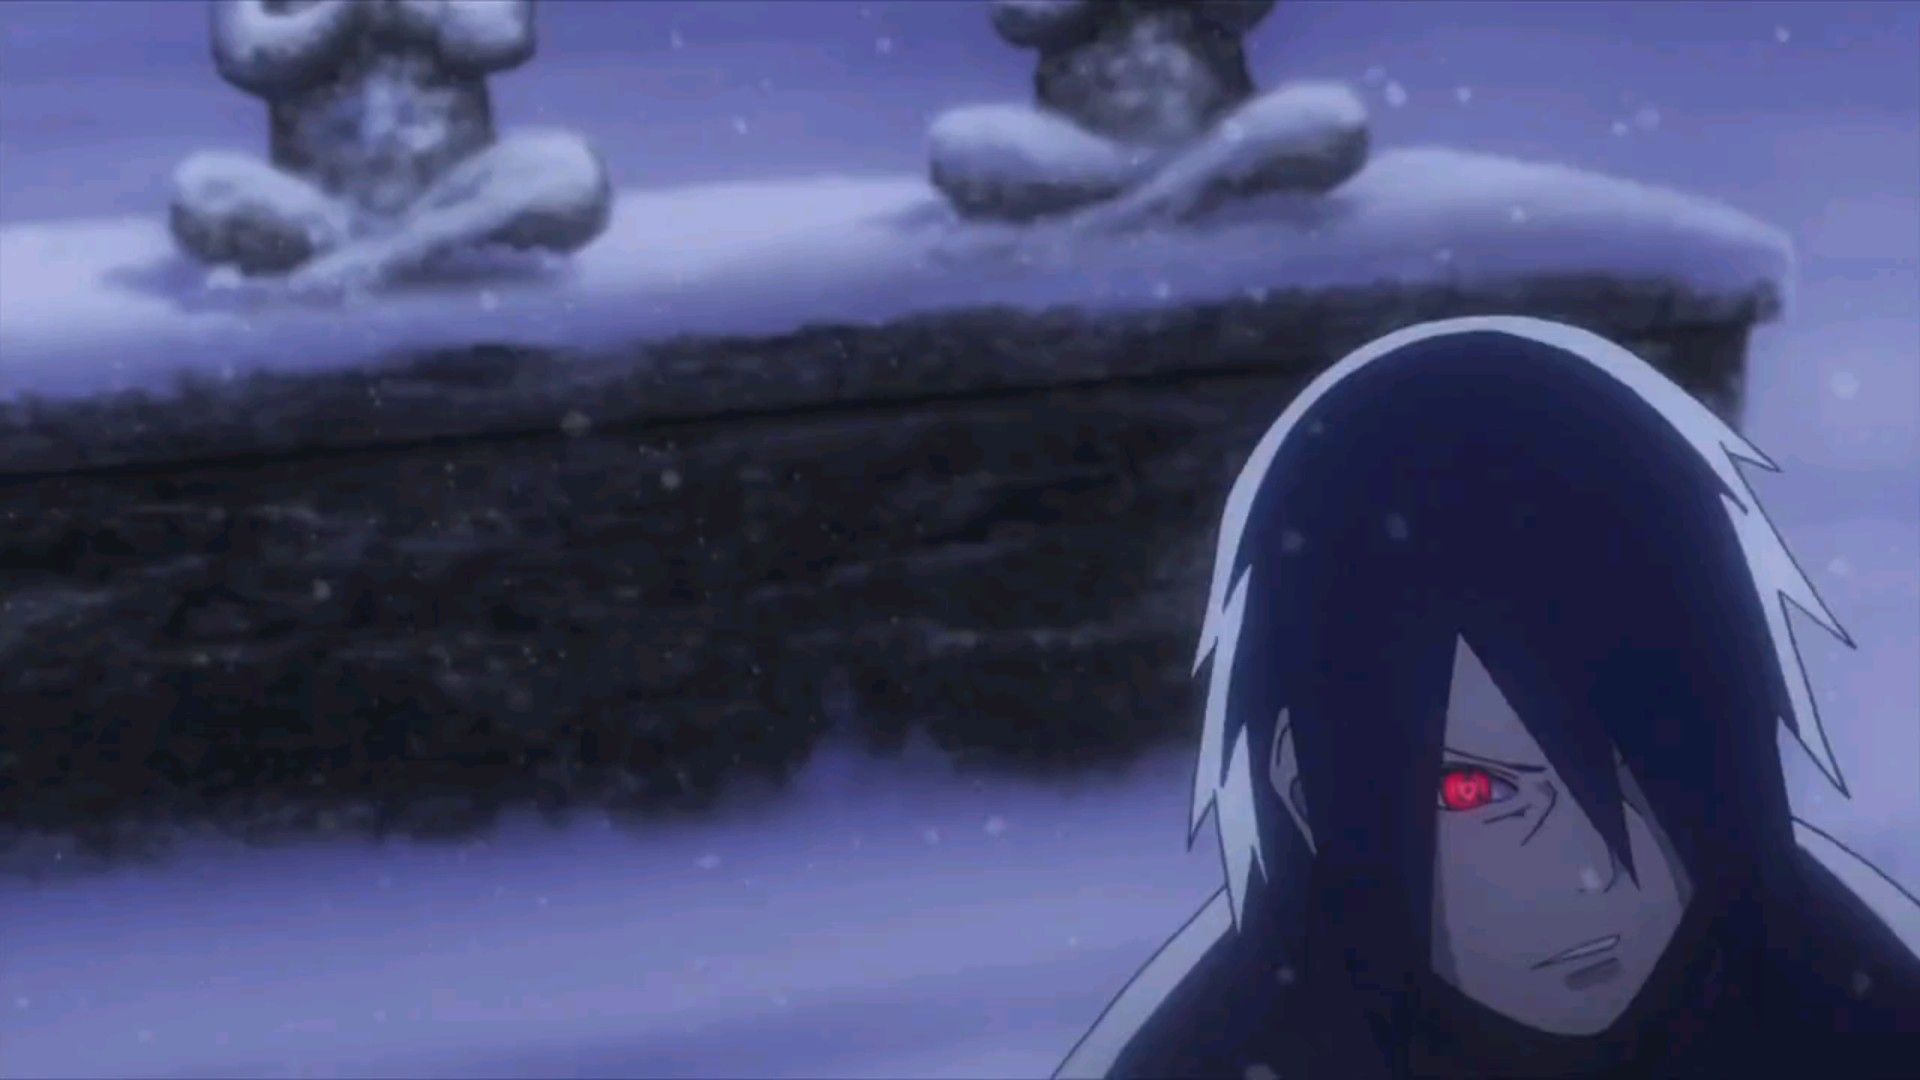 Boruto : Naruto Next Generations on X: Sasuke Uchiha in Boruto Ep 54   / X